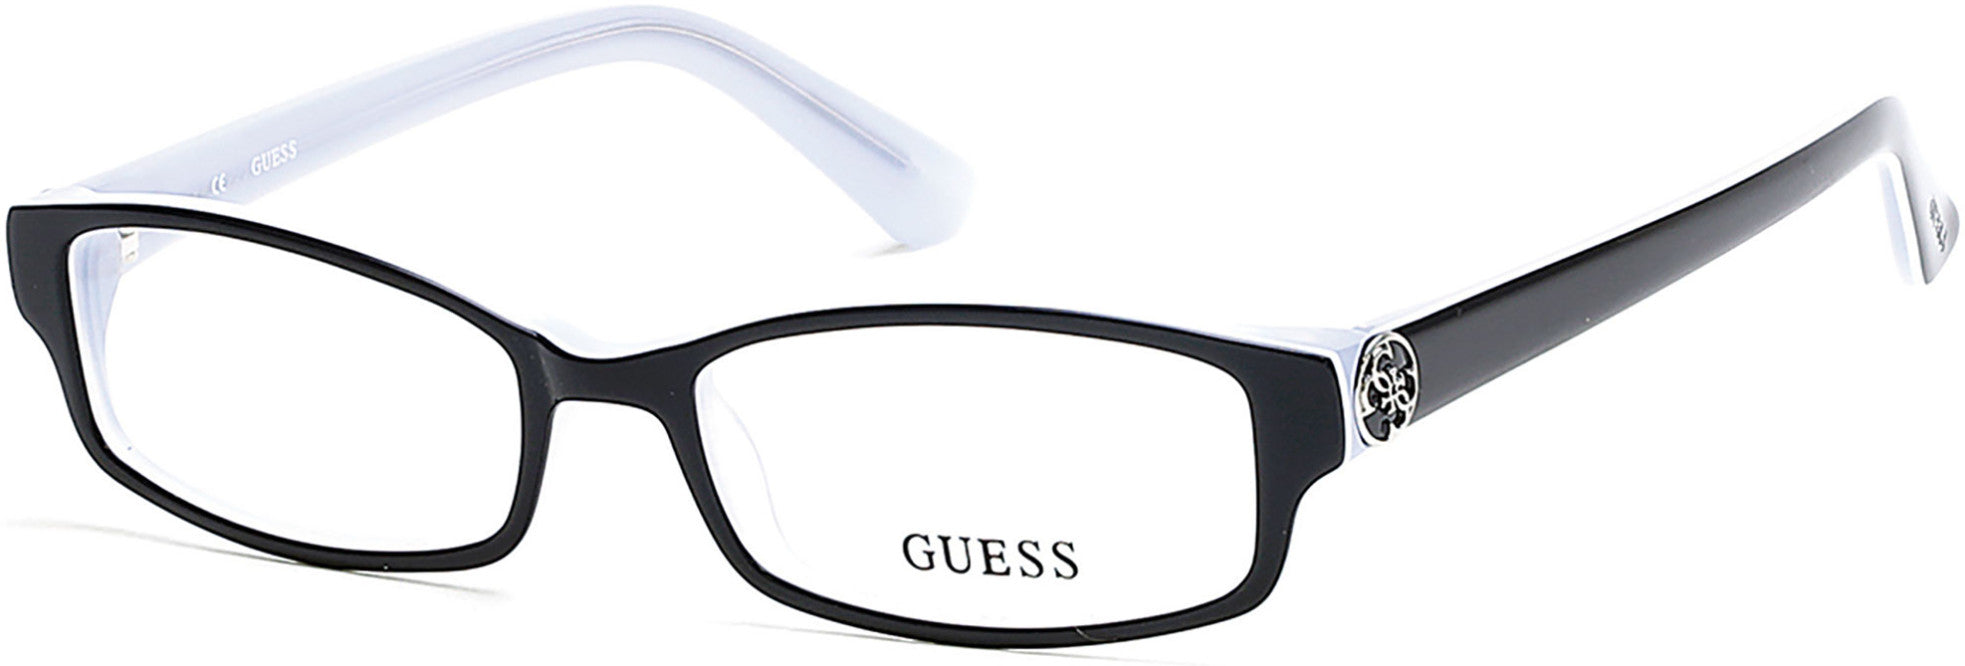 Guess GU2526 Eyeglasses 003-003 - Black/crystal